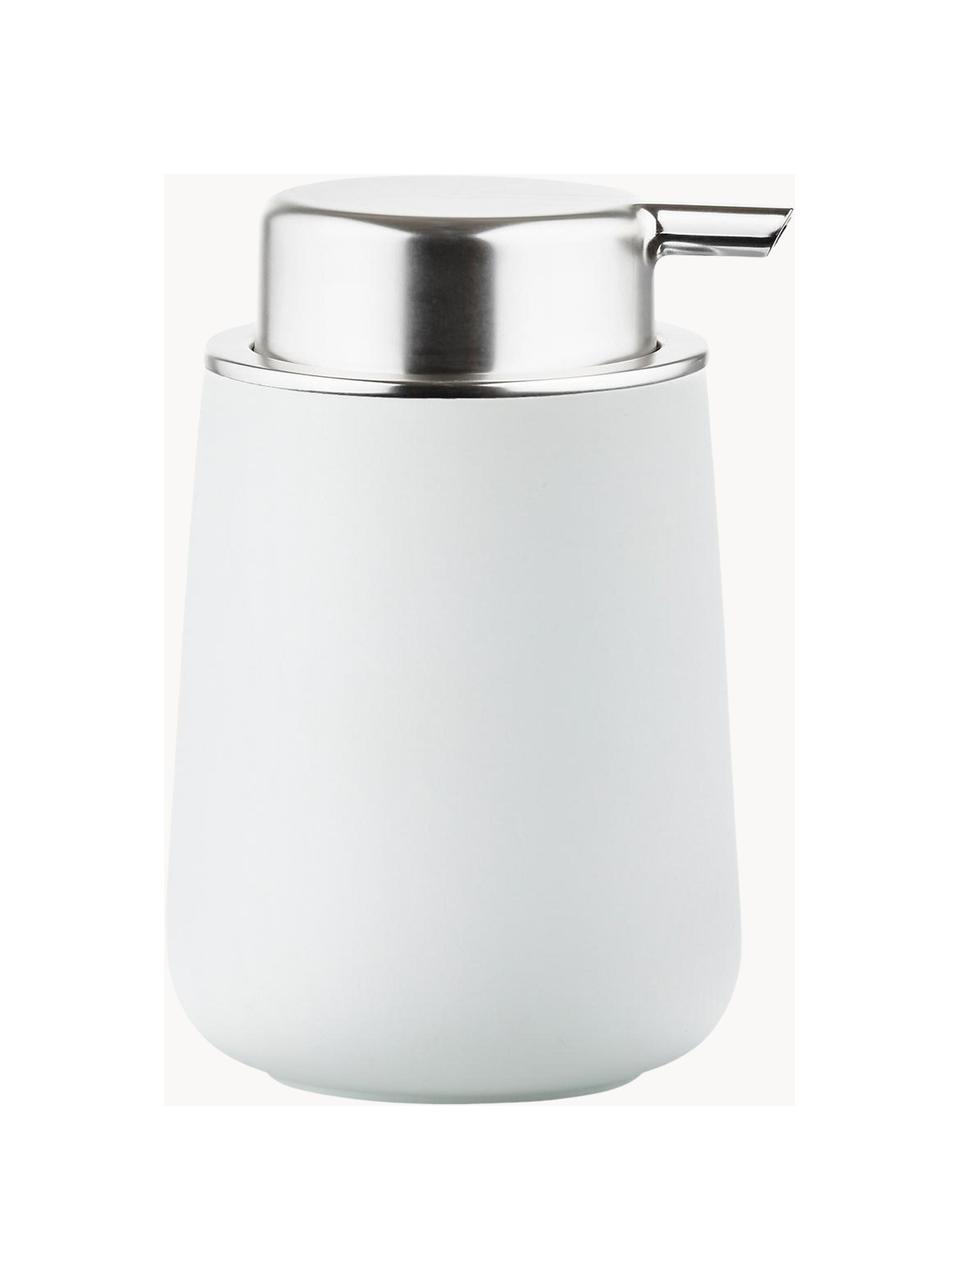 Porzellan-Seifenspender Nova One, Behälter: Porzellan, Weiss, Silberfarben, Ø 8 x H 12 cm